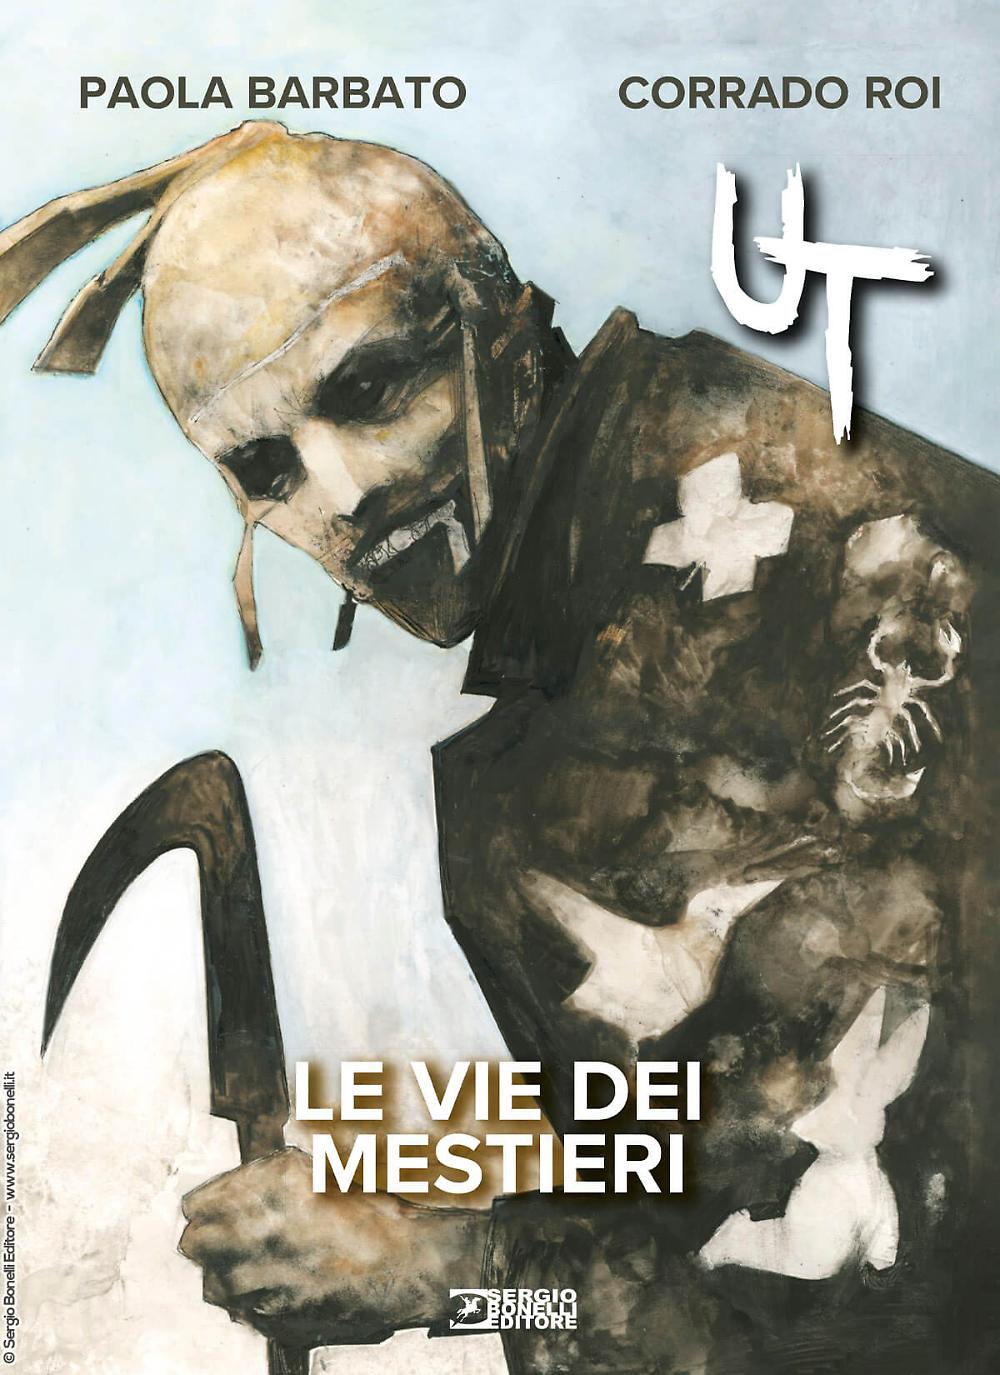 Sergio Bo<em></em>nelli Editore presents “UT. THE VIE DEI MESTIERI” by Paola Barbato and Corrado Roi